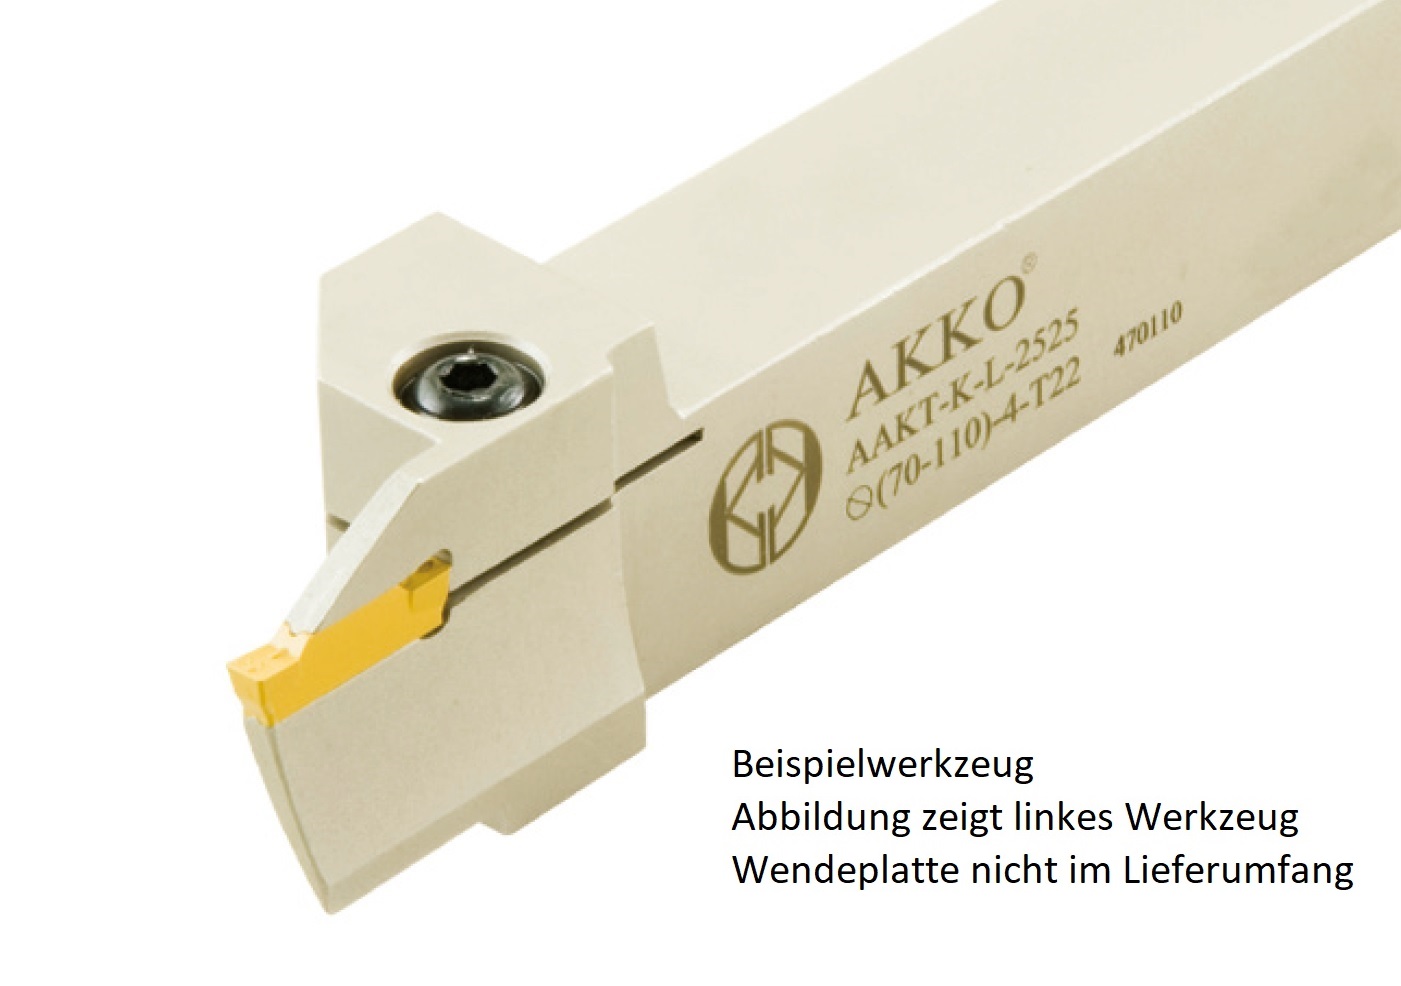 AKKO-Axial-Stechhalter, kompatibel mit Korloy-Stechplatte MGM.-3
Schaft-ø 25x25, Einstechbereich ø 70 - ø 110 mm, links